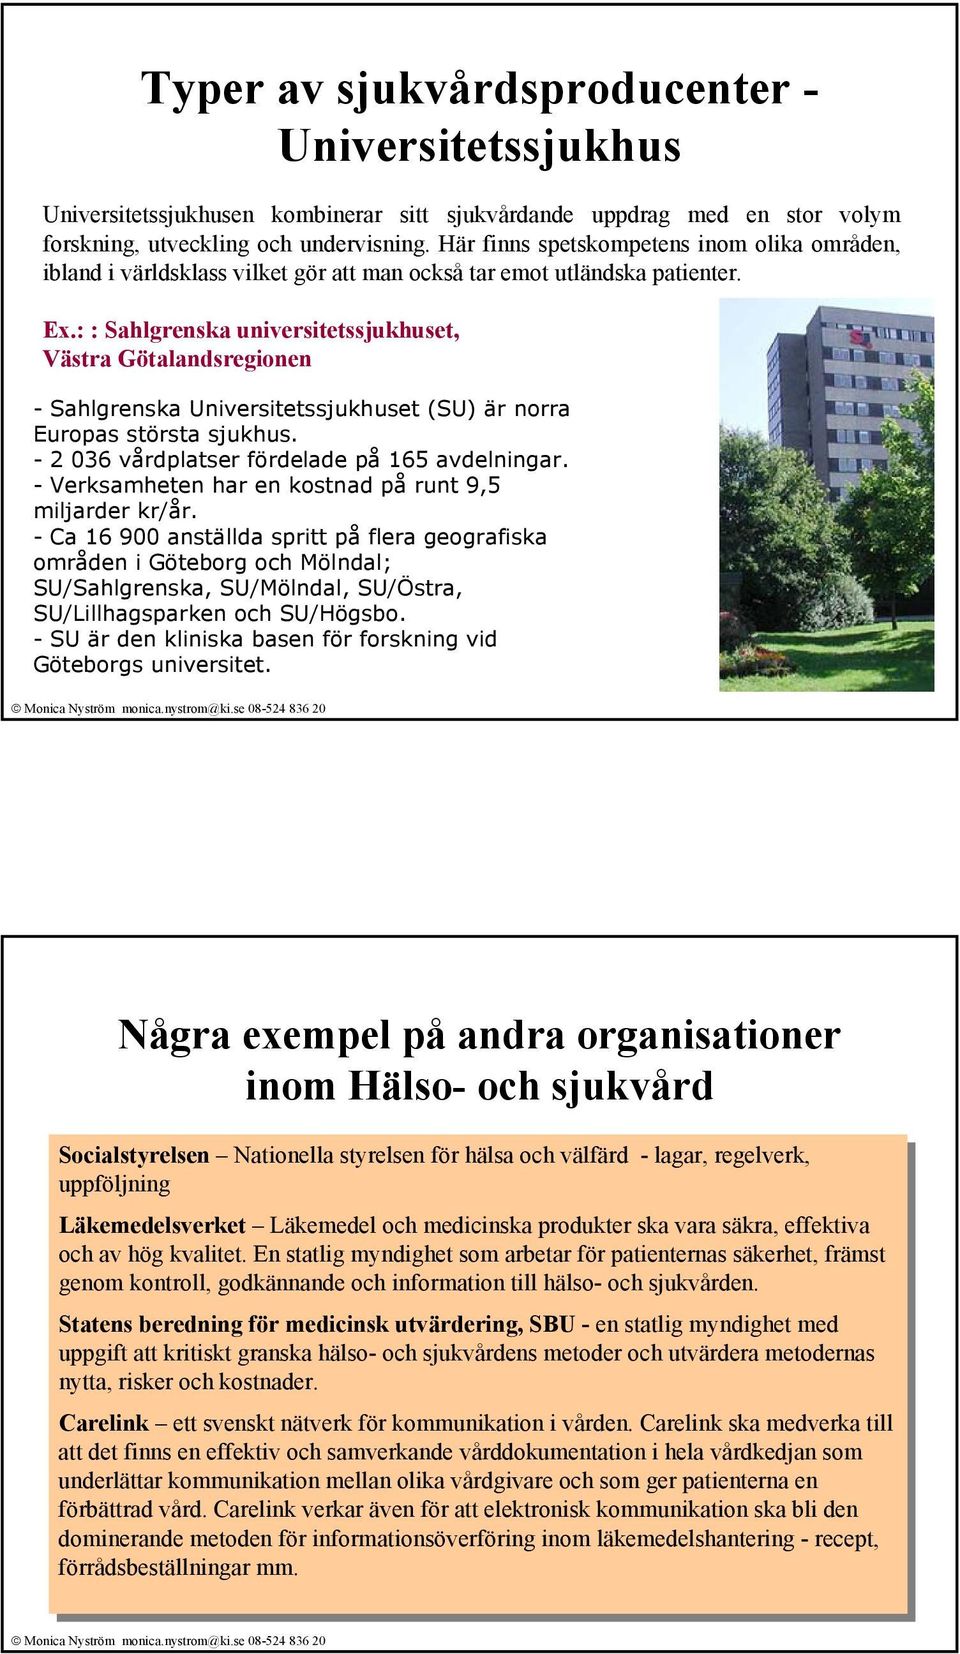 : : Sahlgrenska universitetssjukhuset, Västra Götalandsregionen - Sahlgrenska Universitetssjukhuset (SU) är norra Europas största sjukhus. - 2 036 vårdplatser fördelade på 165 avdelningar.